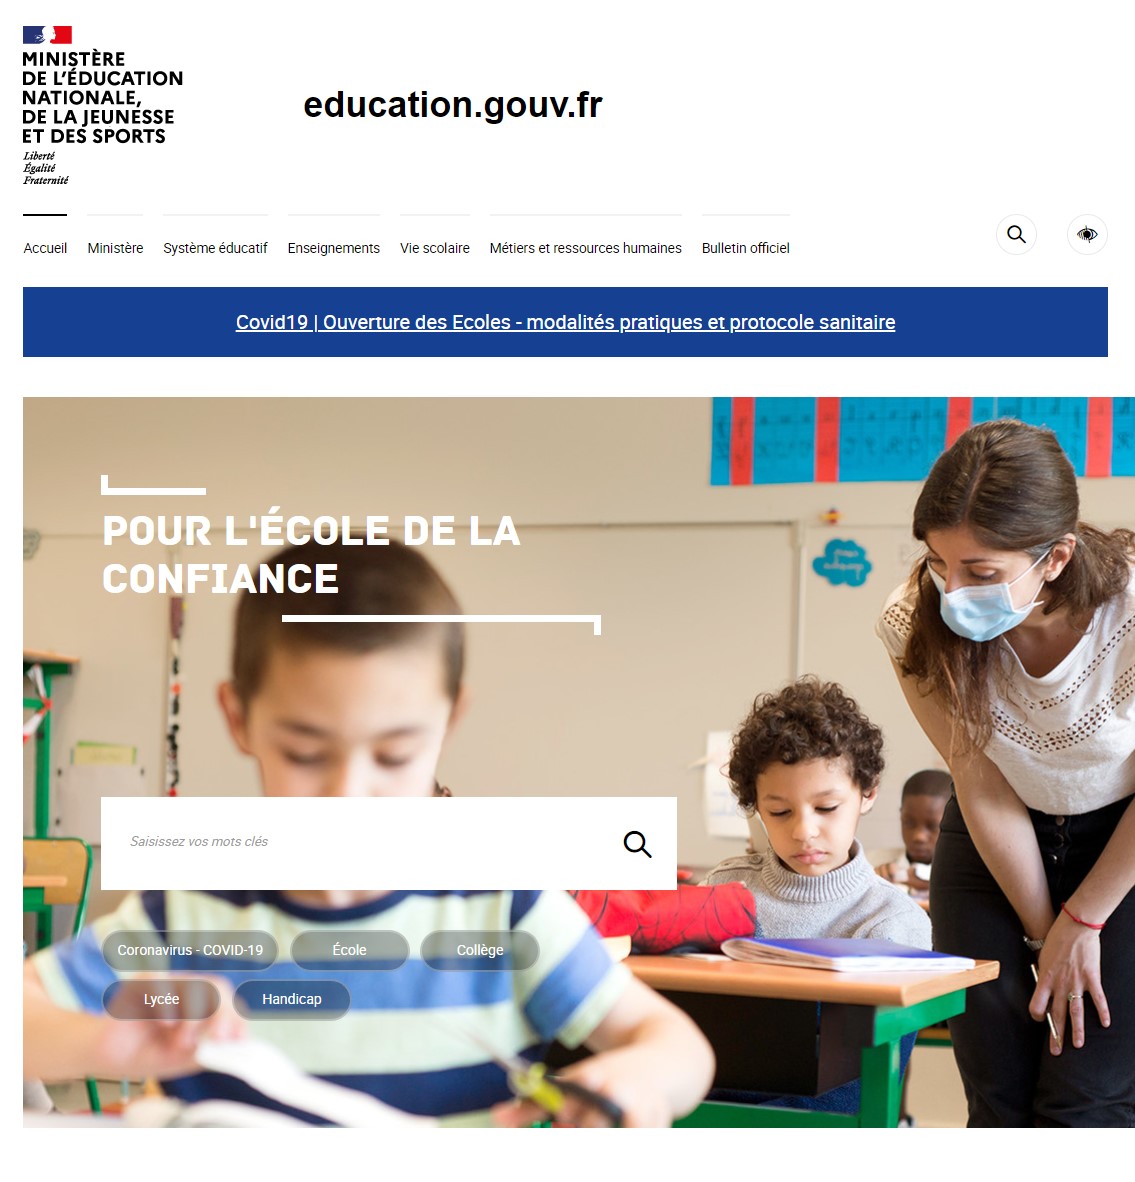 Site education.gouv.fr le 01 janvier 2021 selon le site Weybackmachine